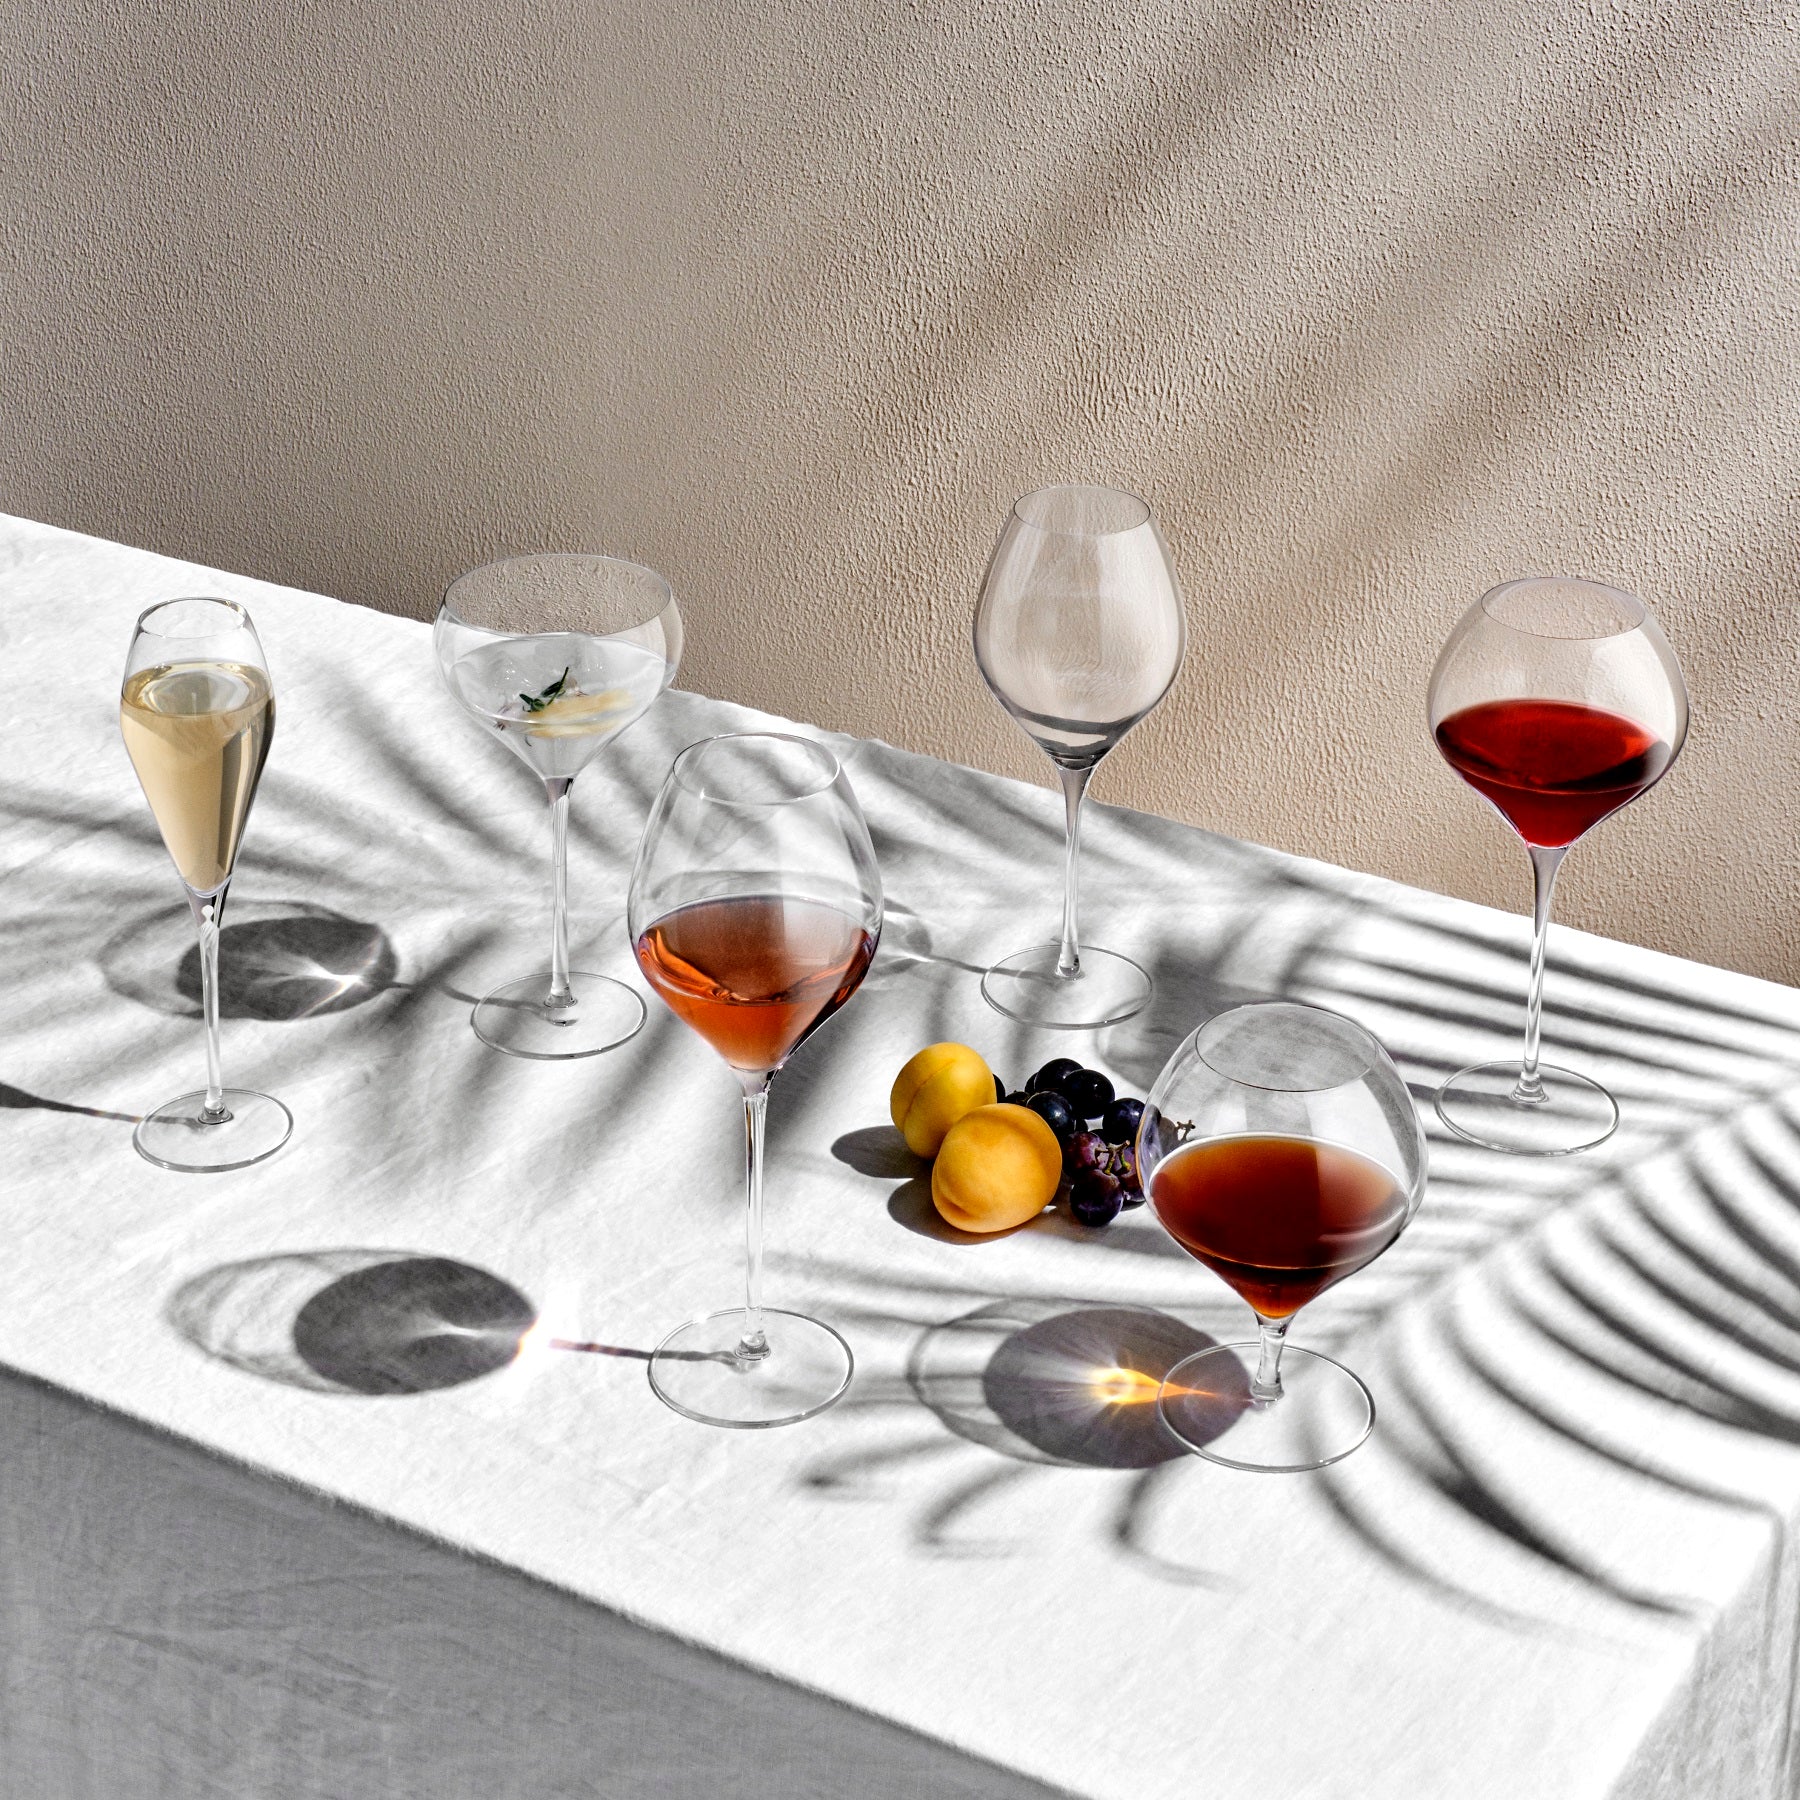 Nude Glass Vintage Martini Glasses, Set of 4, Lead-Free Crystal on